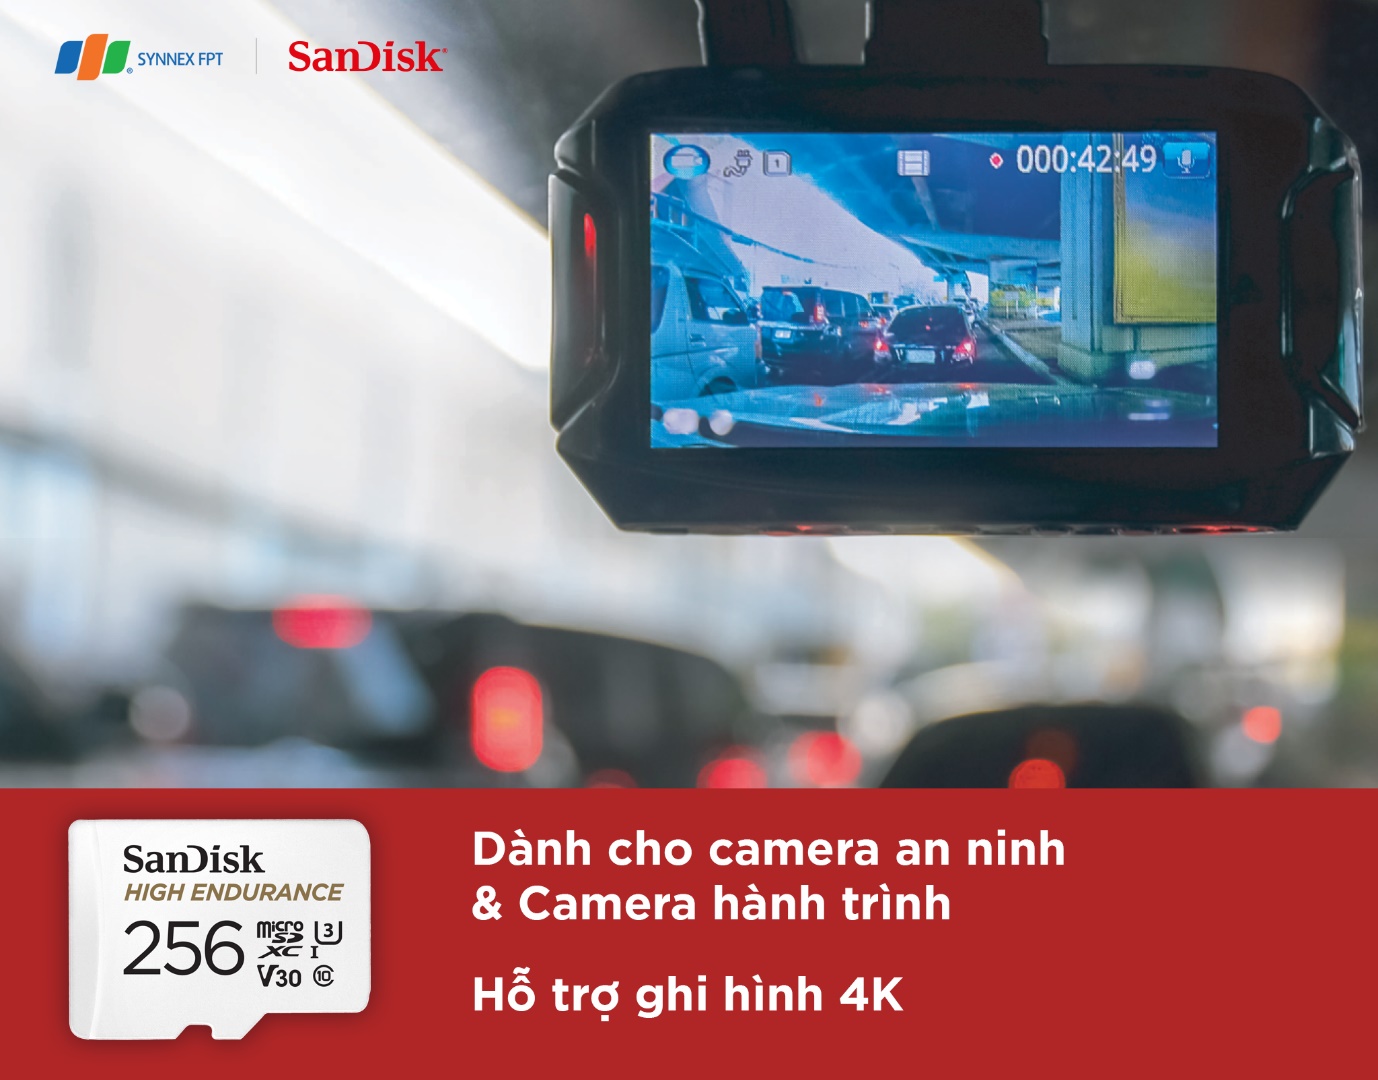 SanDisk High Endurance: Những thông số ấn tượng cho một thẻ ghi hình - Ảnh 2.